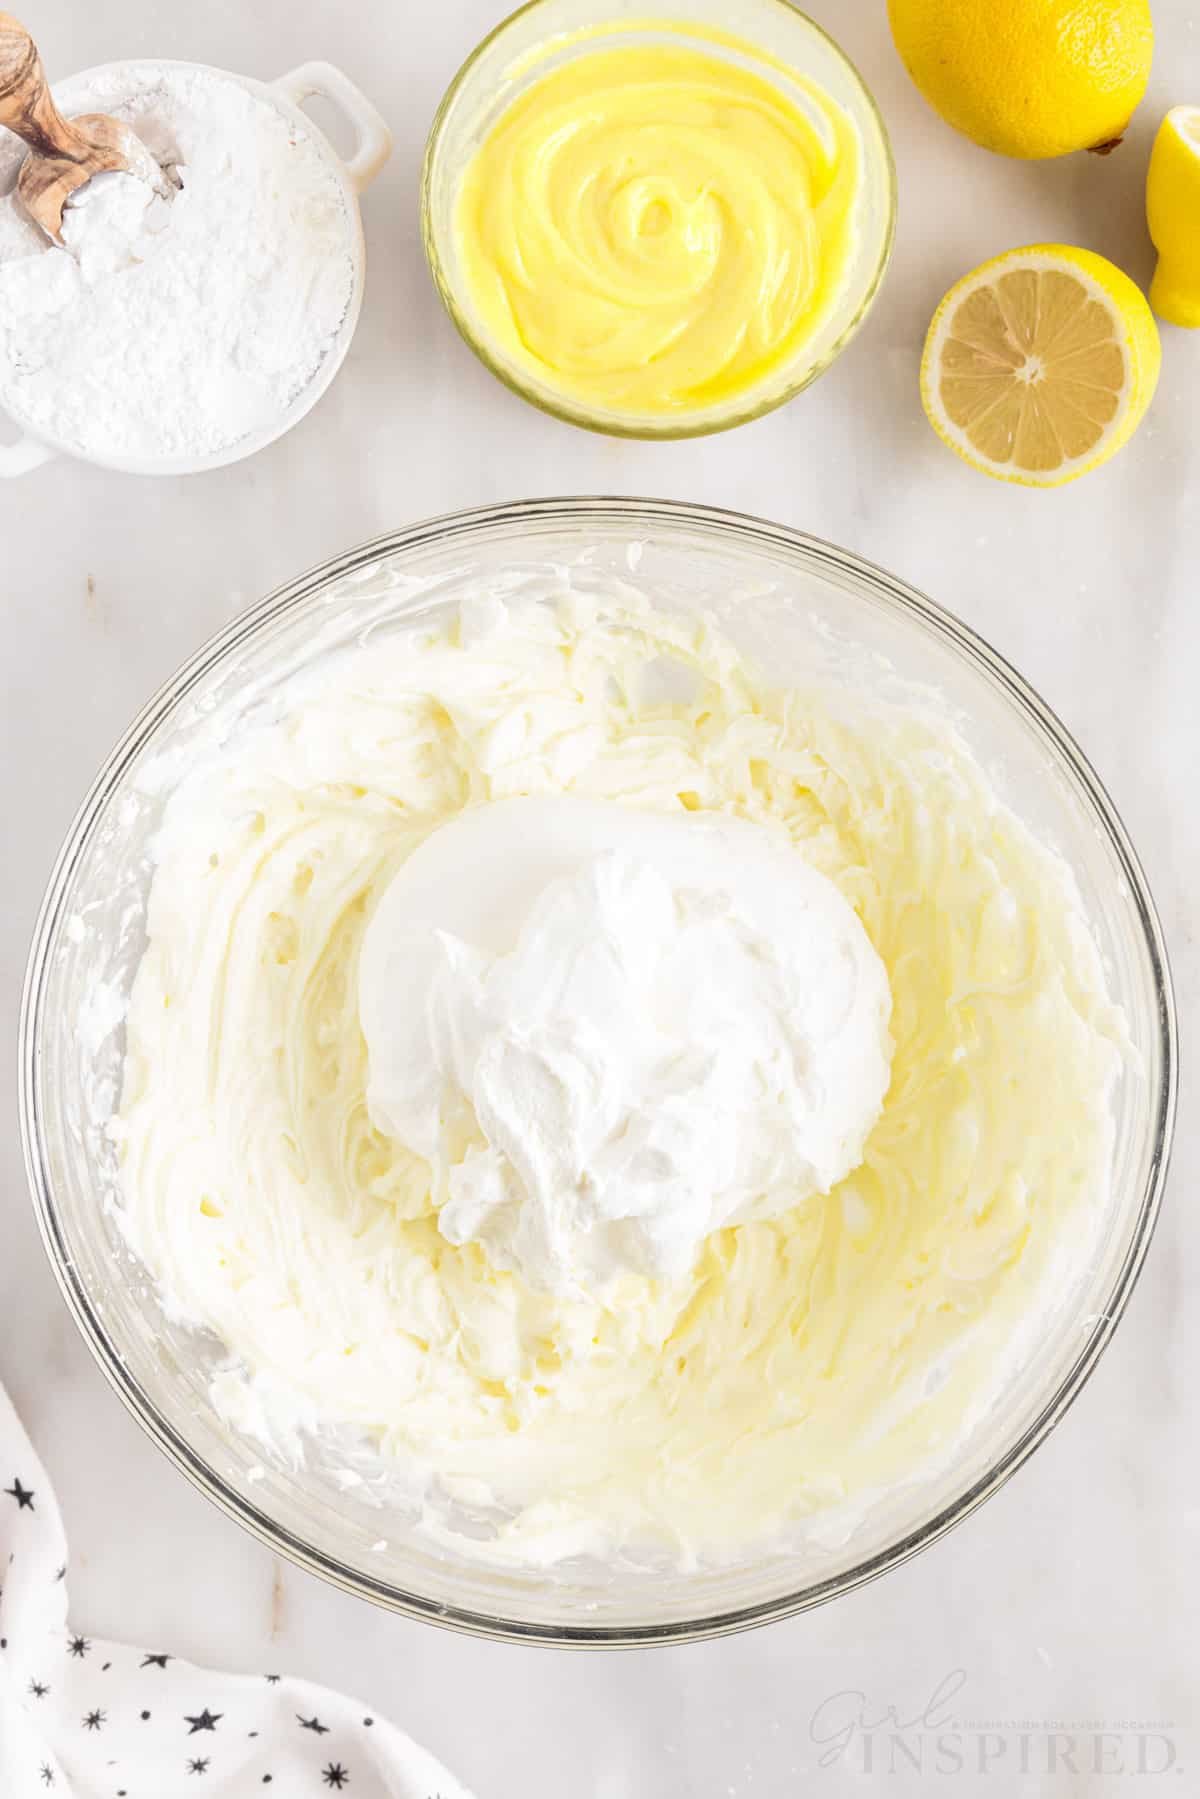 whipped cream added to cream cheese mixture to make lemon cream cheese pie